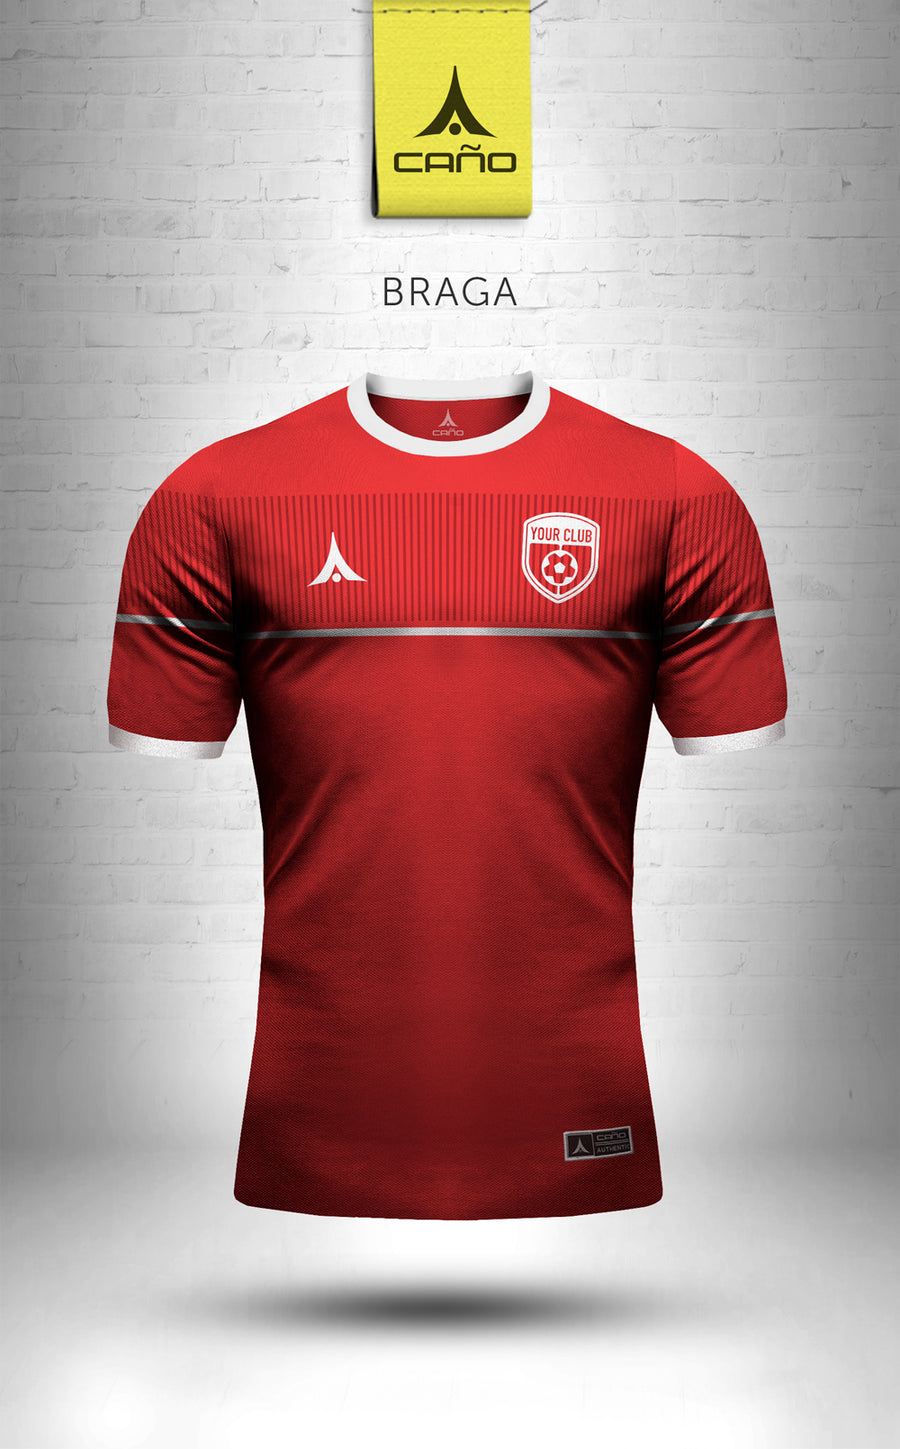 Braga in red/white